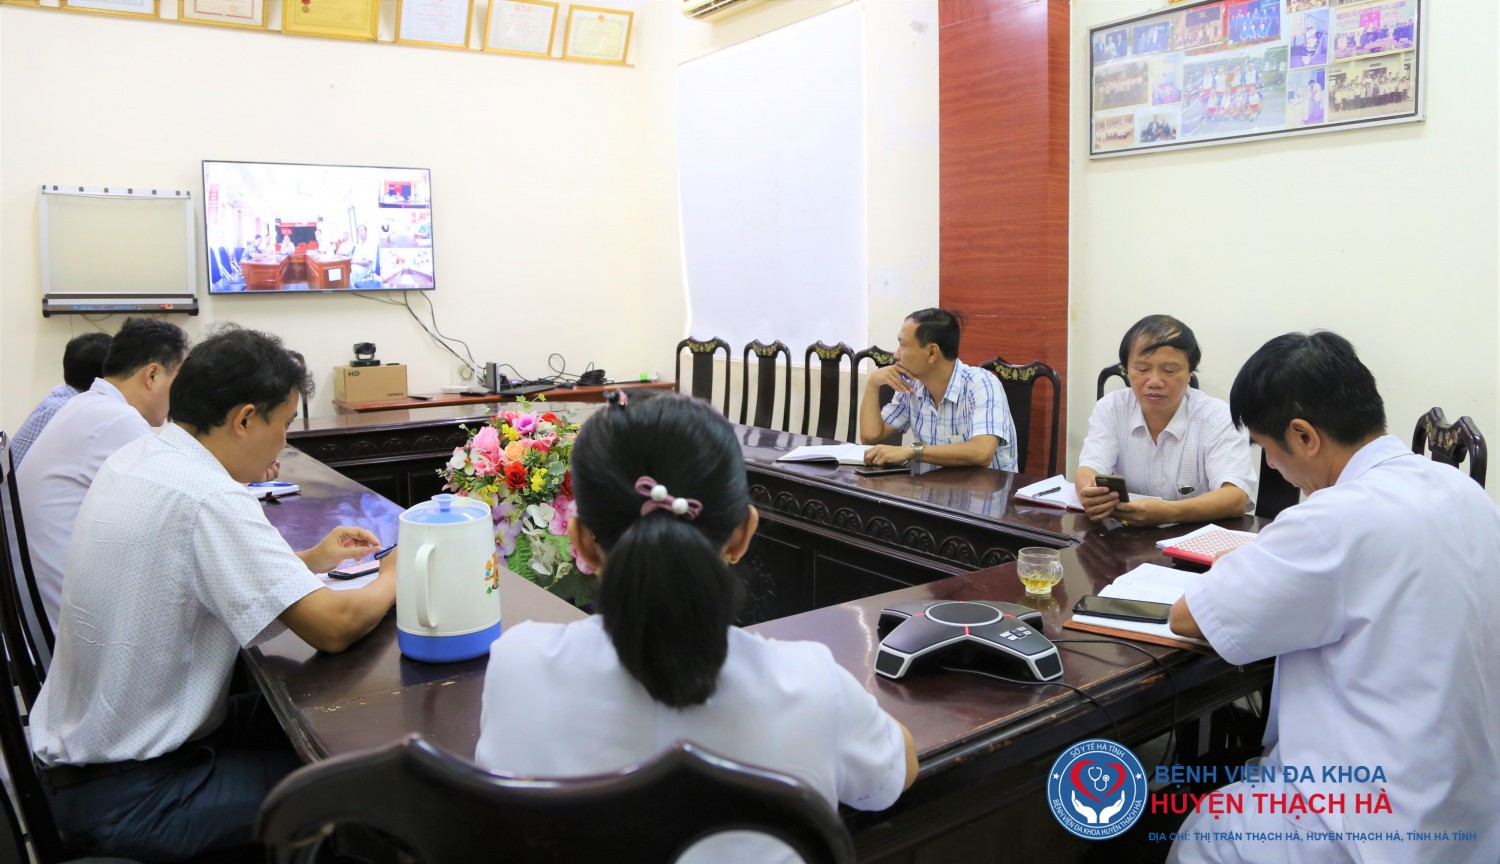 Hội nghị trực tuyến công tác phòng chống dịch trên địa bàn - Điểm cầu huyện Thạch Hà